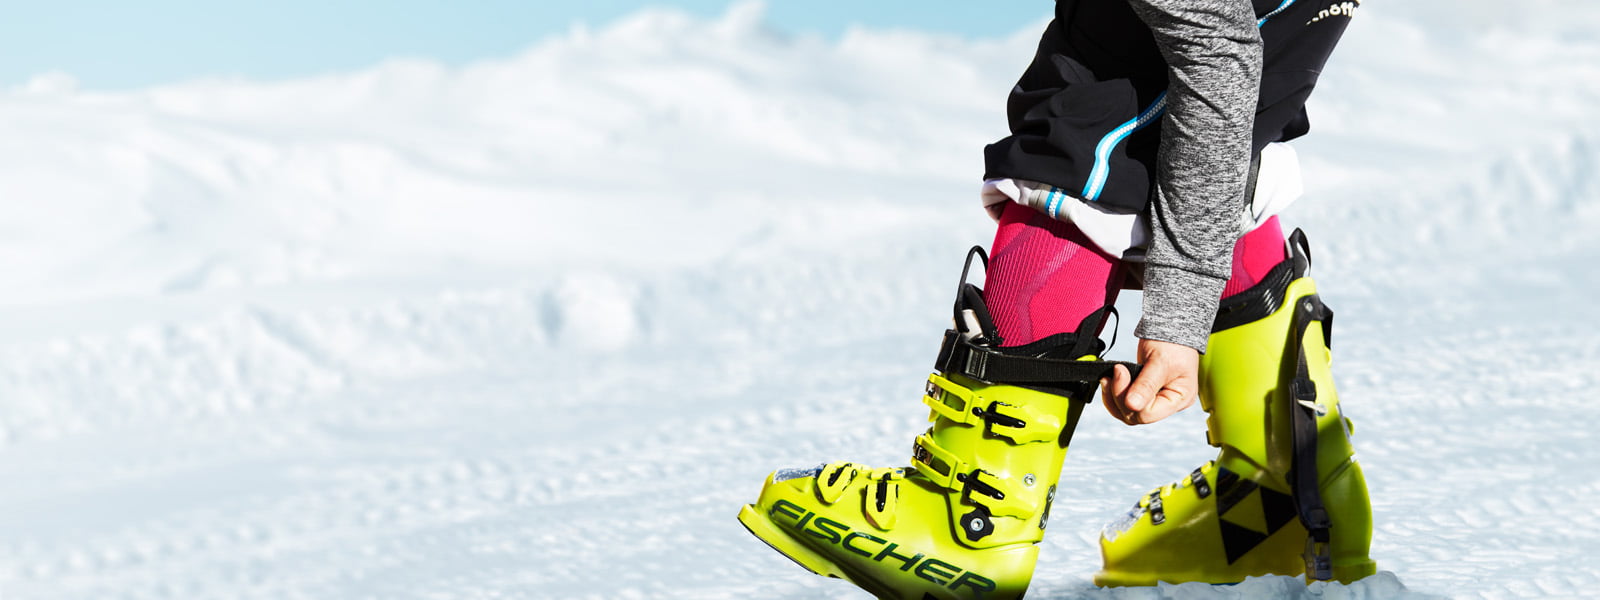 Skiërs met roze ski -sokken en grijze mouwen trekken de riem op zijn gele ski -laars	 sneeuw op de achtergrond